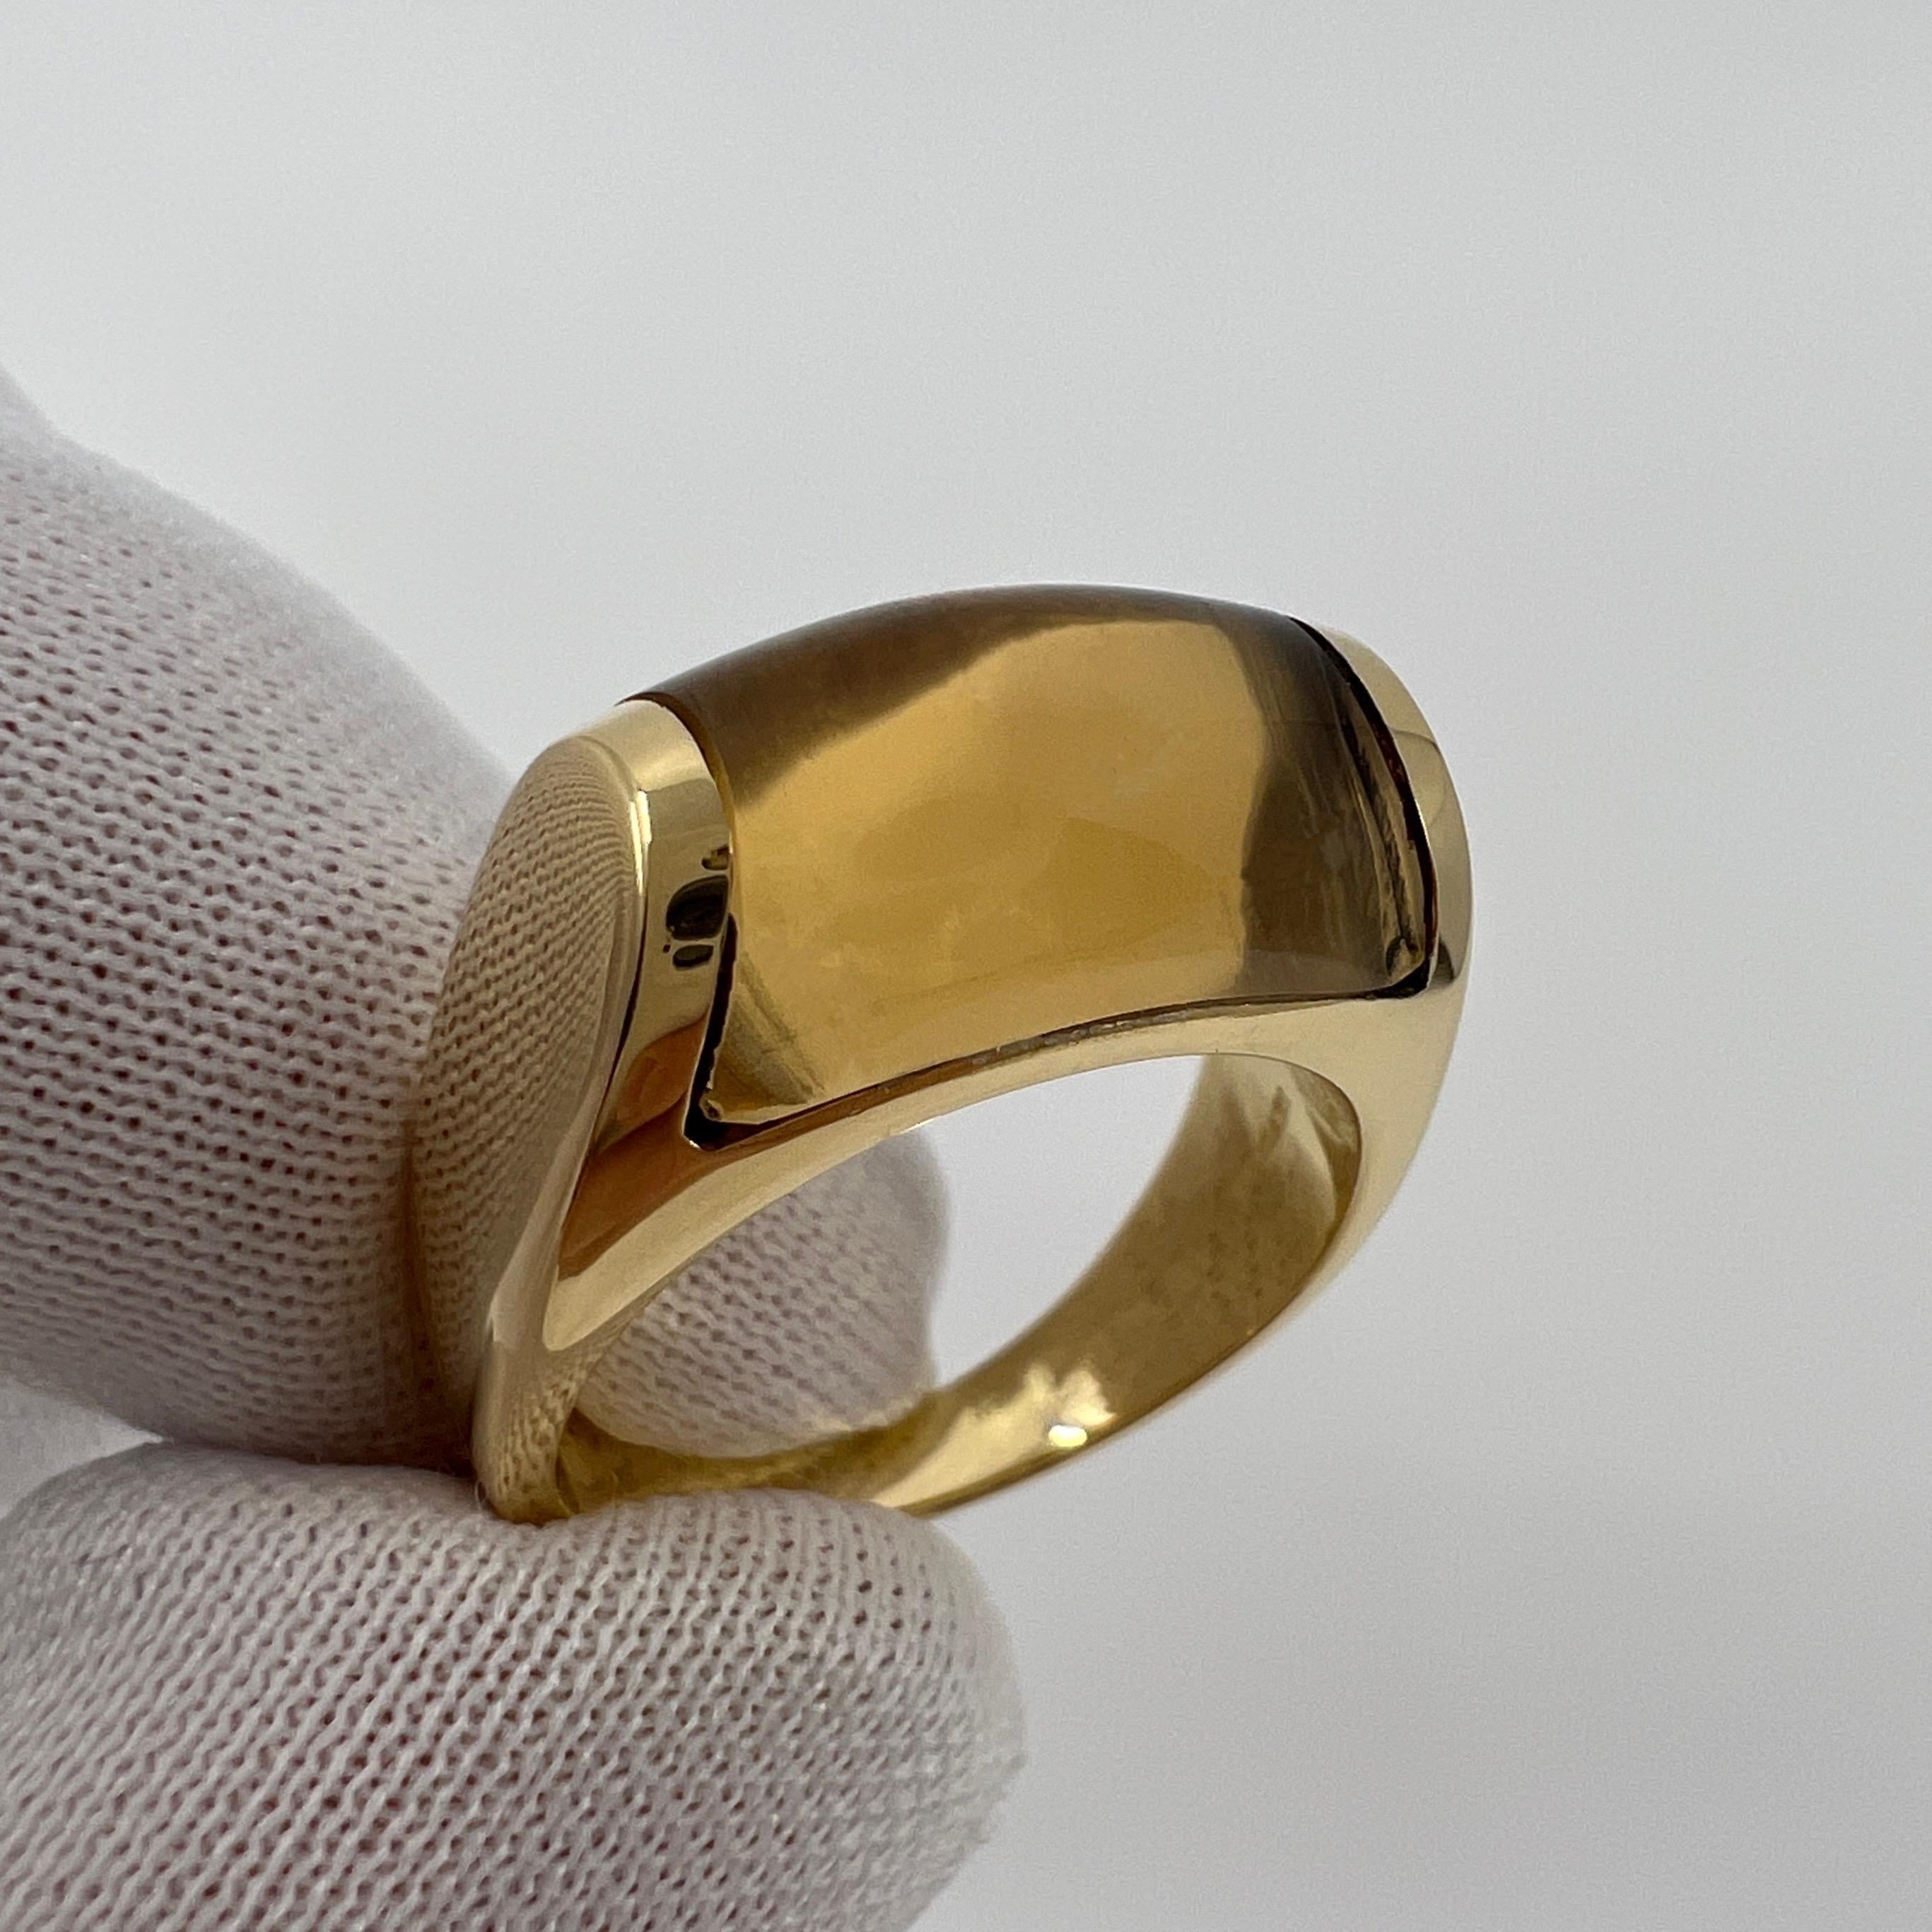 Women's or Men's Rare Bvlgari Bulgari Tronchetto 18k Yellow Gold Yellow Citrine Ring with Box